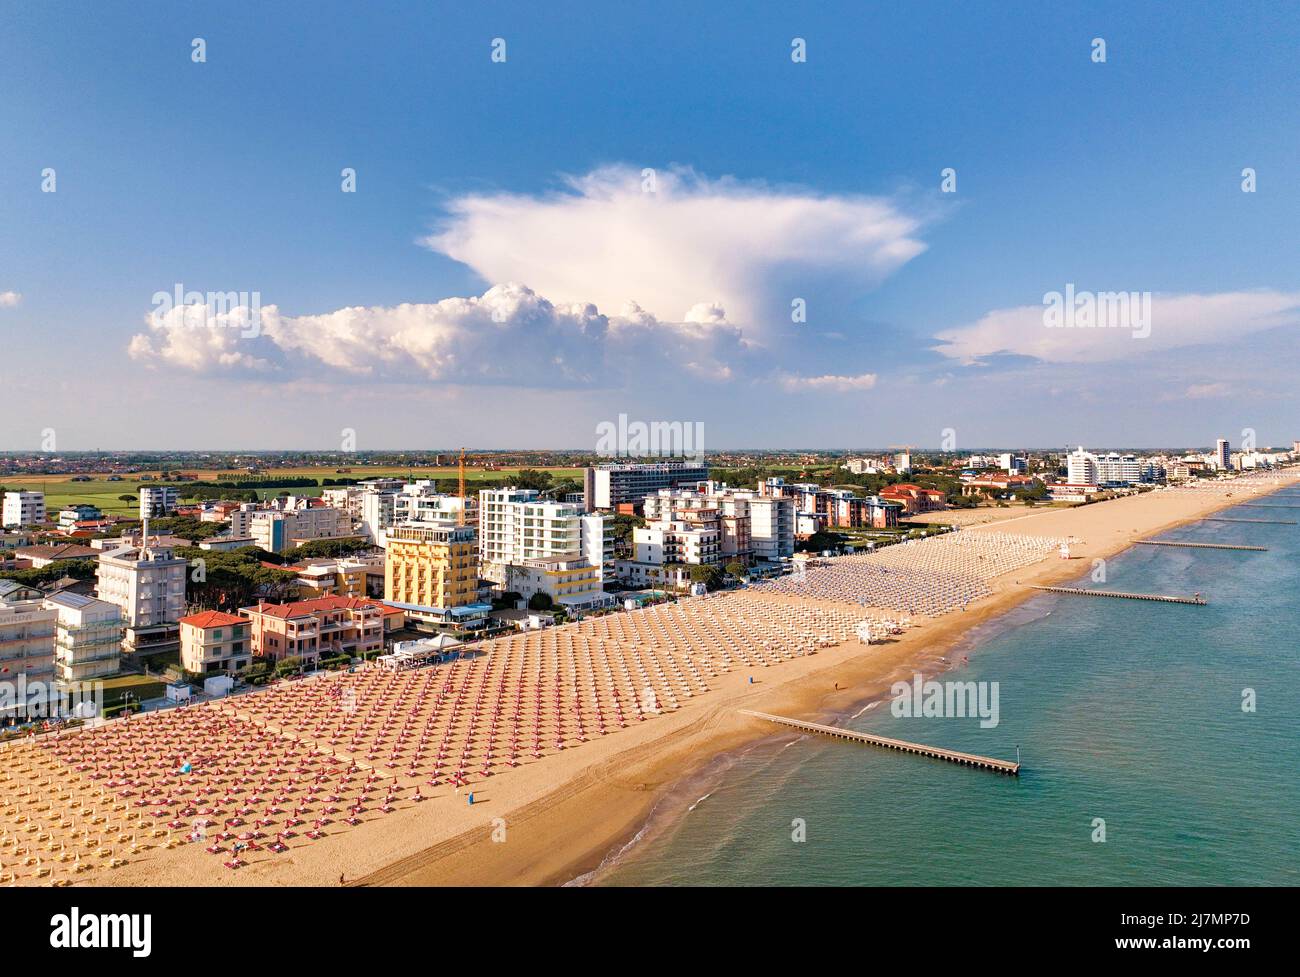 Spiaggia di Jesolo con lettini e ombrelloni - vista aerea dall'alto con veduta sulla città Foto de stock